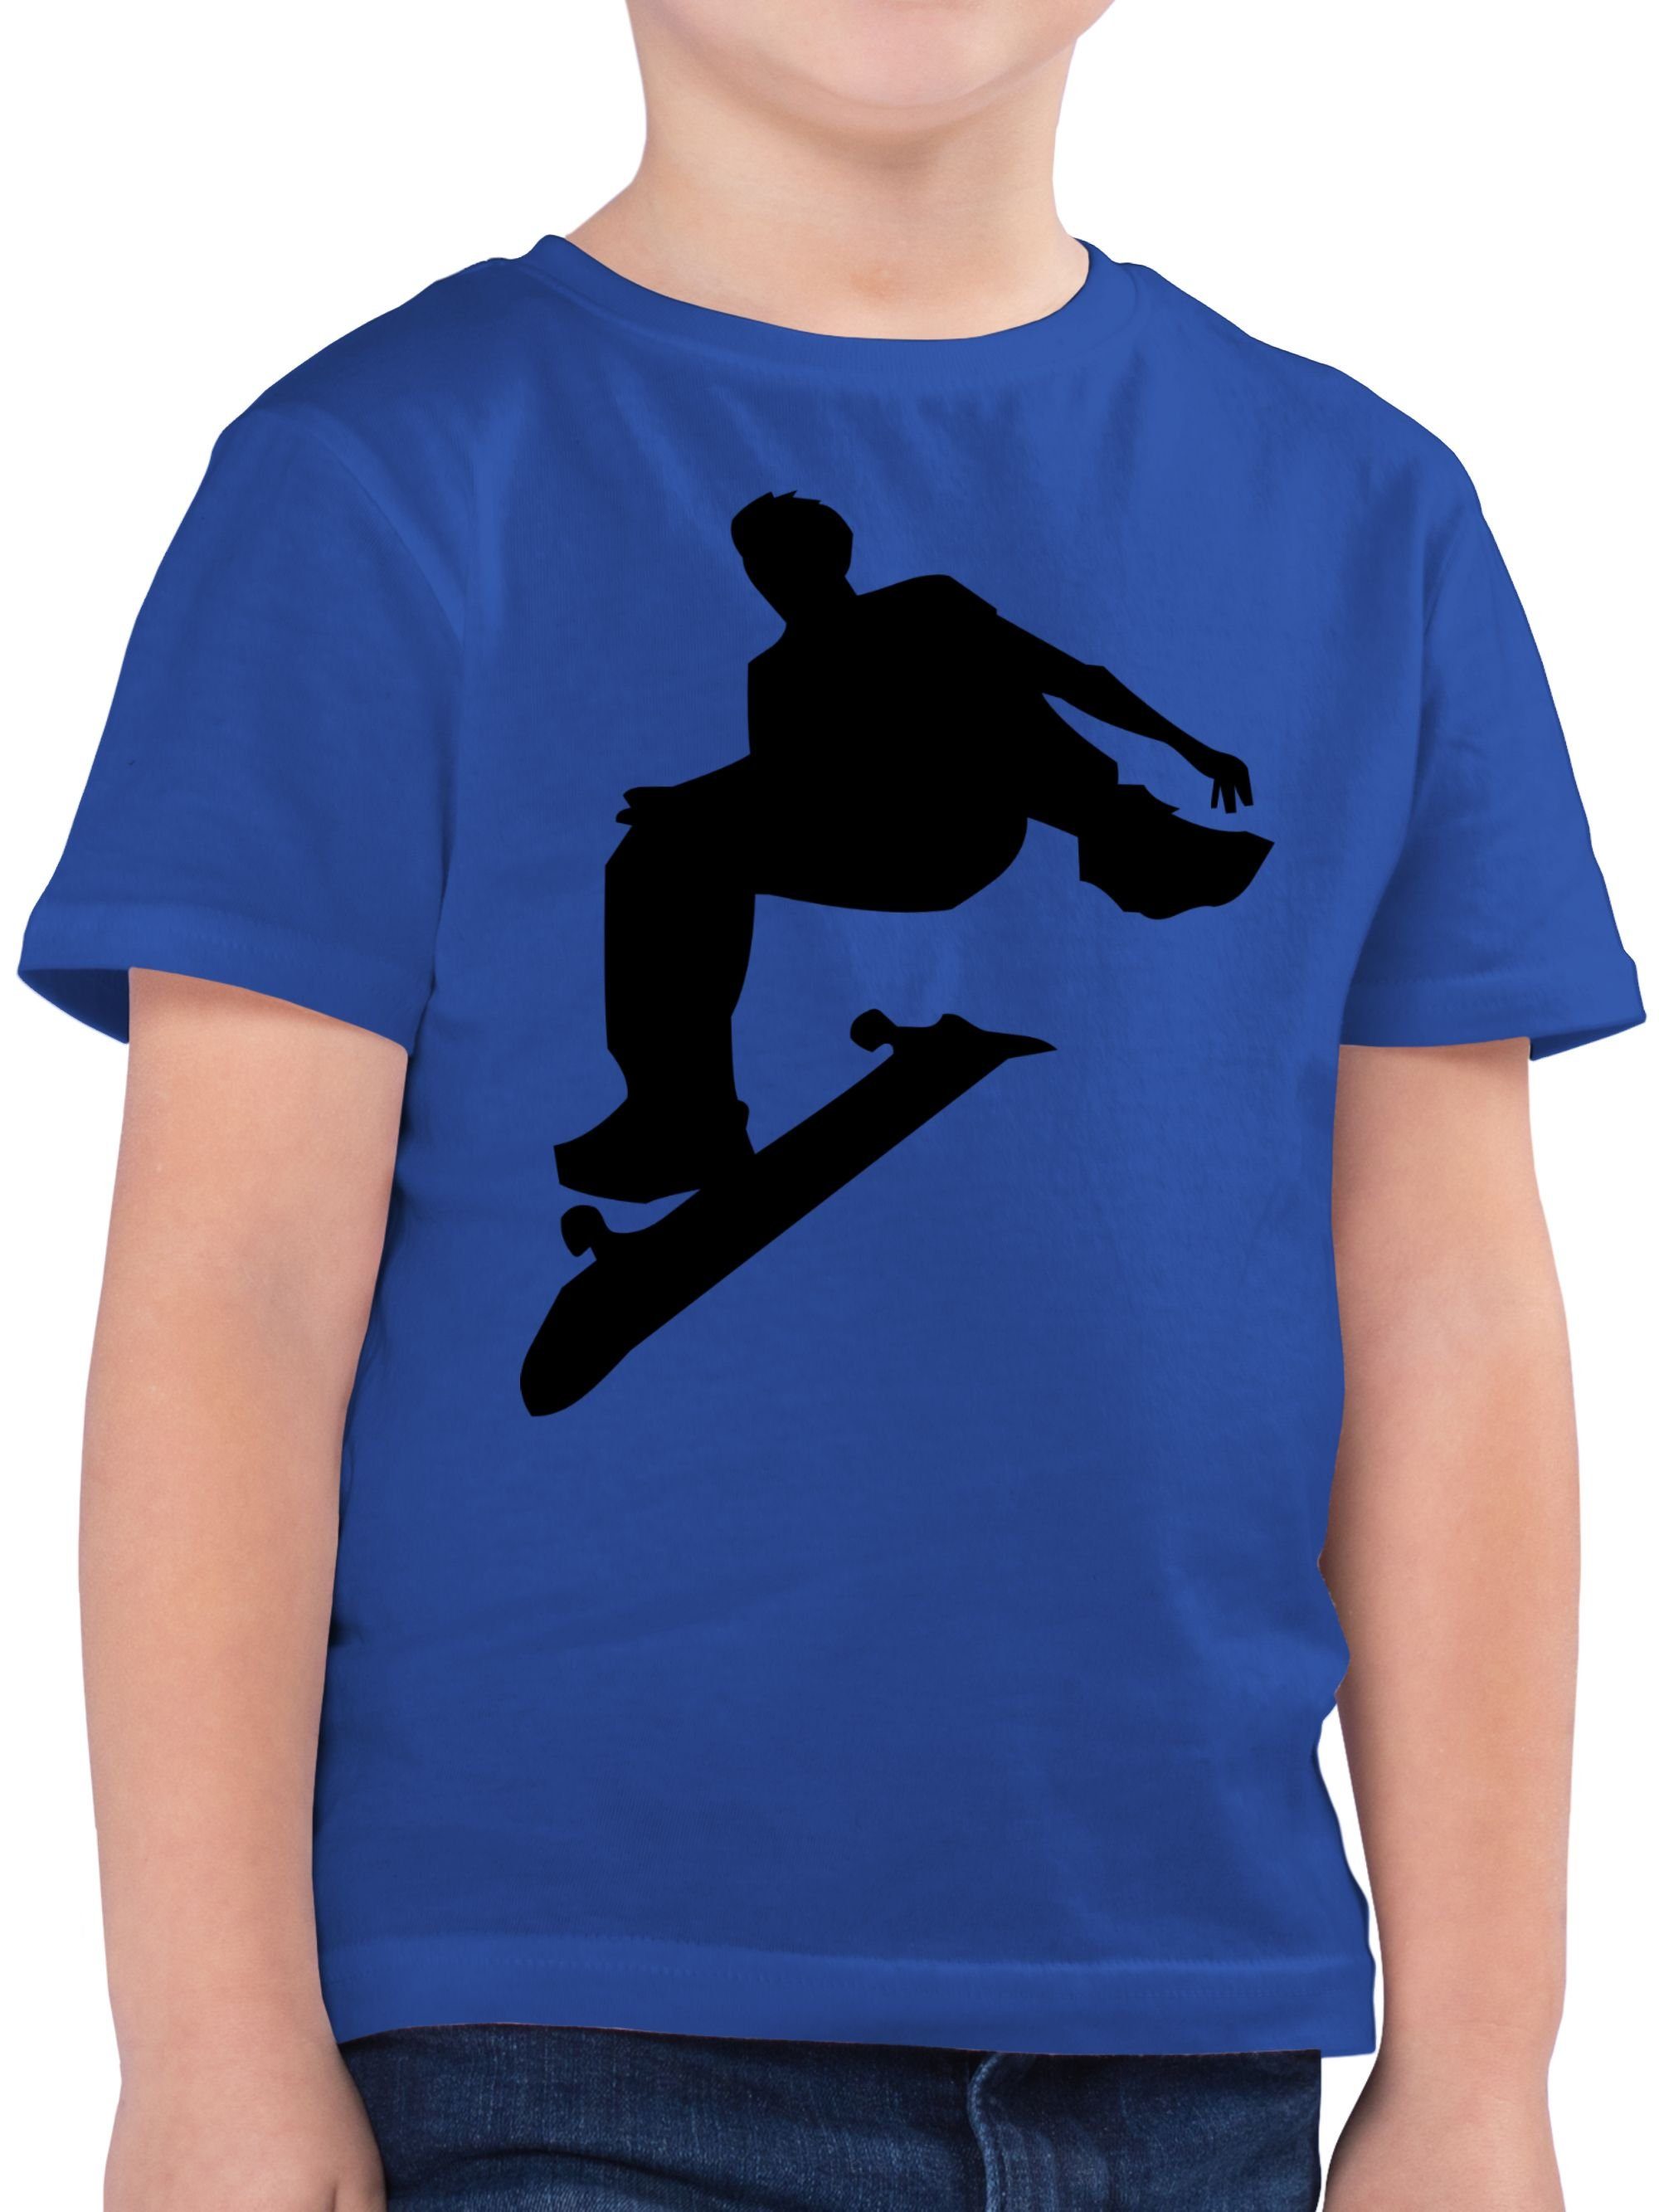 Kinder T-Shirt 2 Skater Shirtracer Kleidung Sport Royalblau